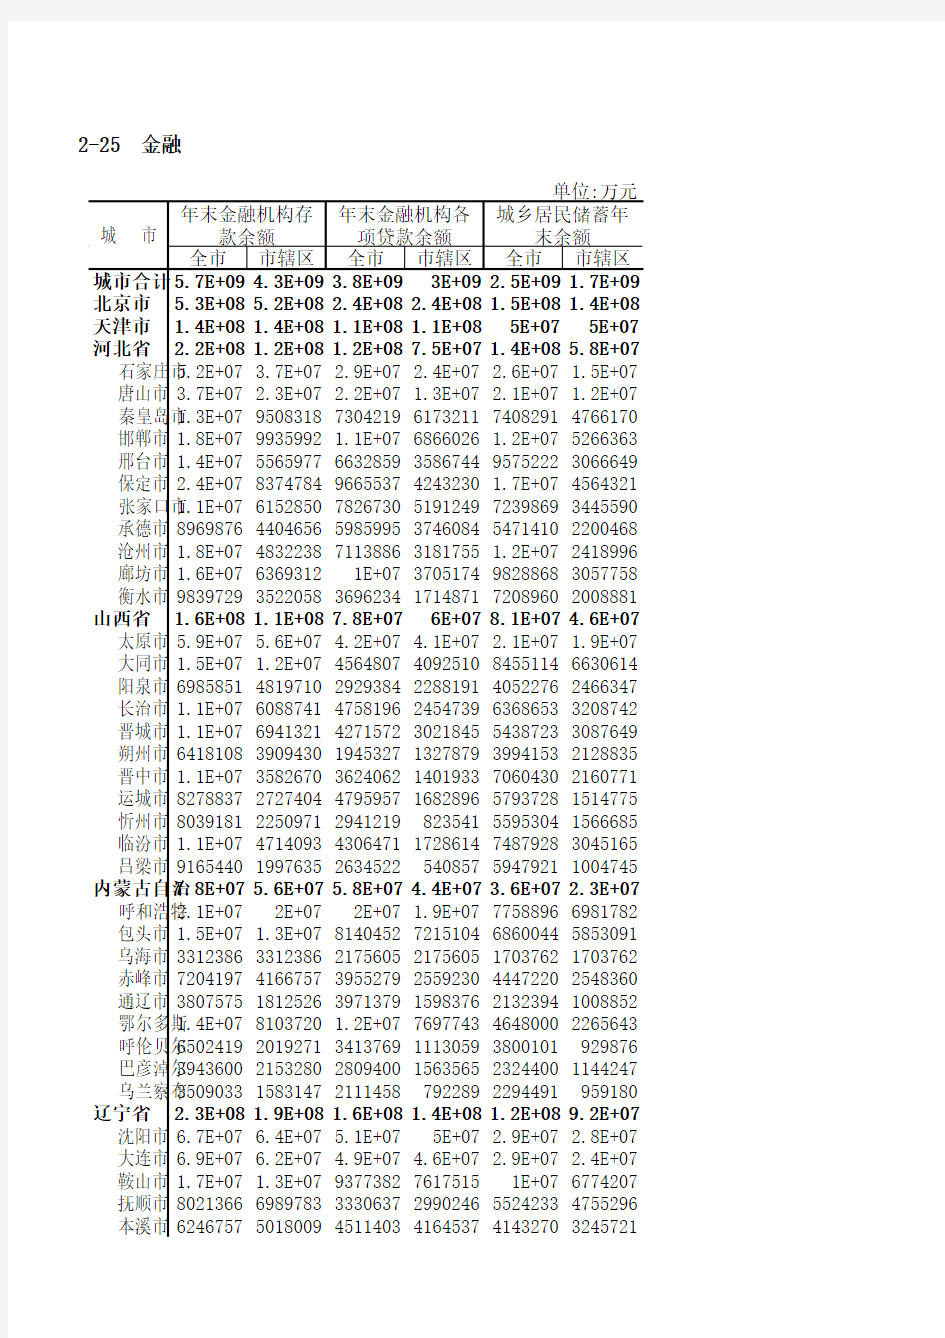 中国城市统计年鉴2011(Excel数据)11